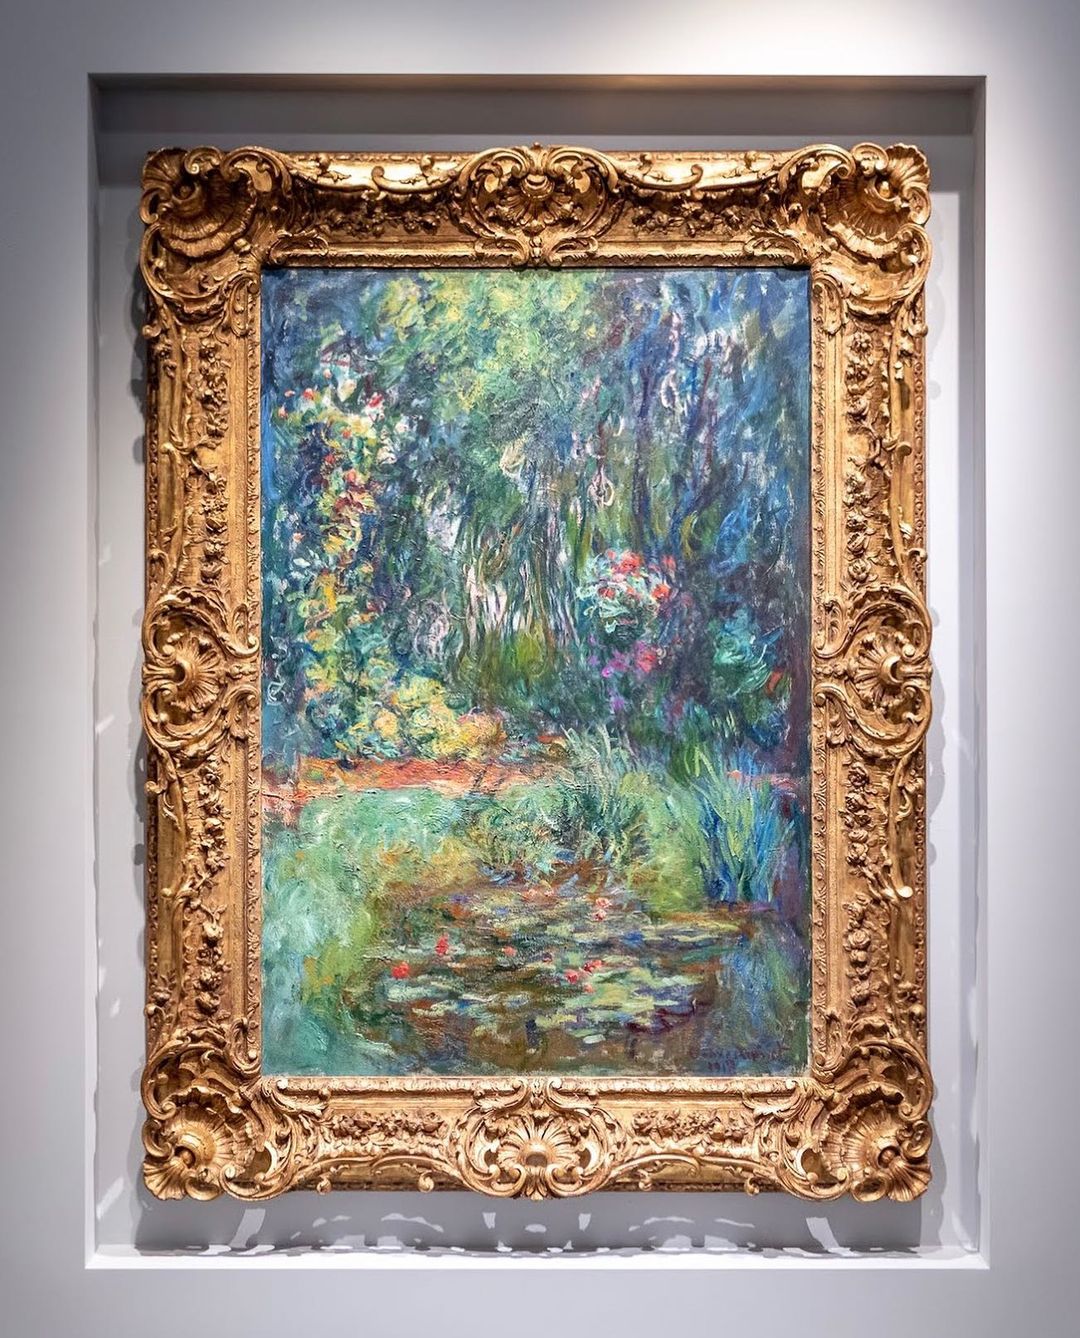 Пруд с лилиями» Клода Моне продали на Sothebys за $50,8 млн за четыре  минуты торгов | Forbes Life